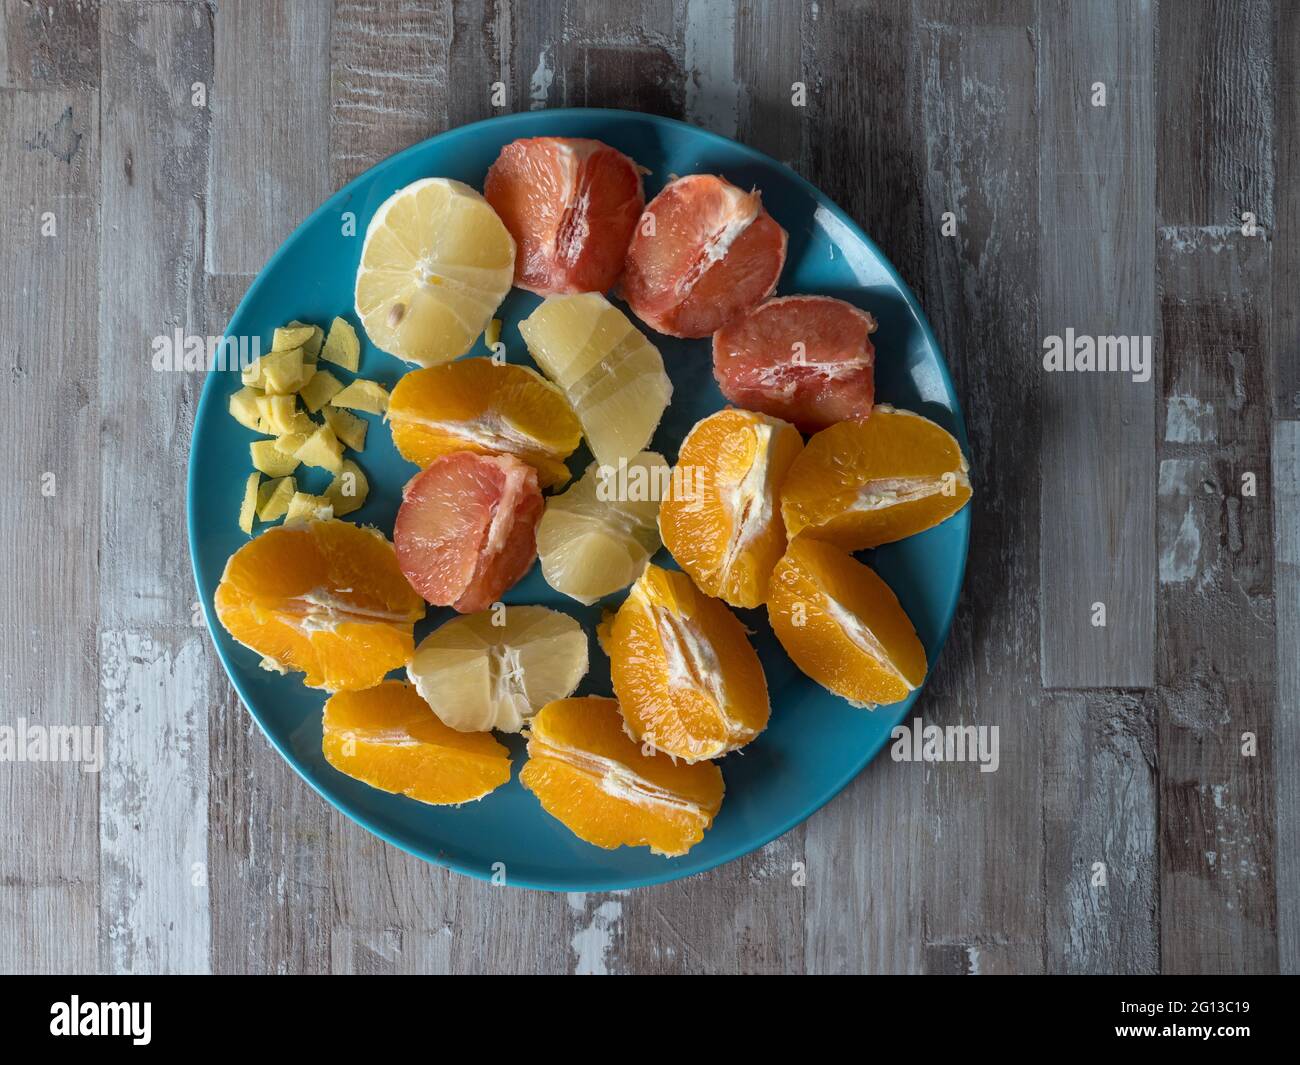 Zitrusfrüchte mit einer Gruppe von Orangen, Zitronen, Limetten, Mandarinen und Grapefruits als Symbol für eine gesunde Ernährung und Stärkung des Immunsystems Stockfoto